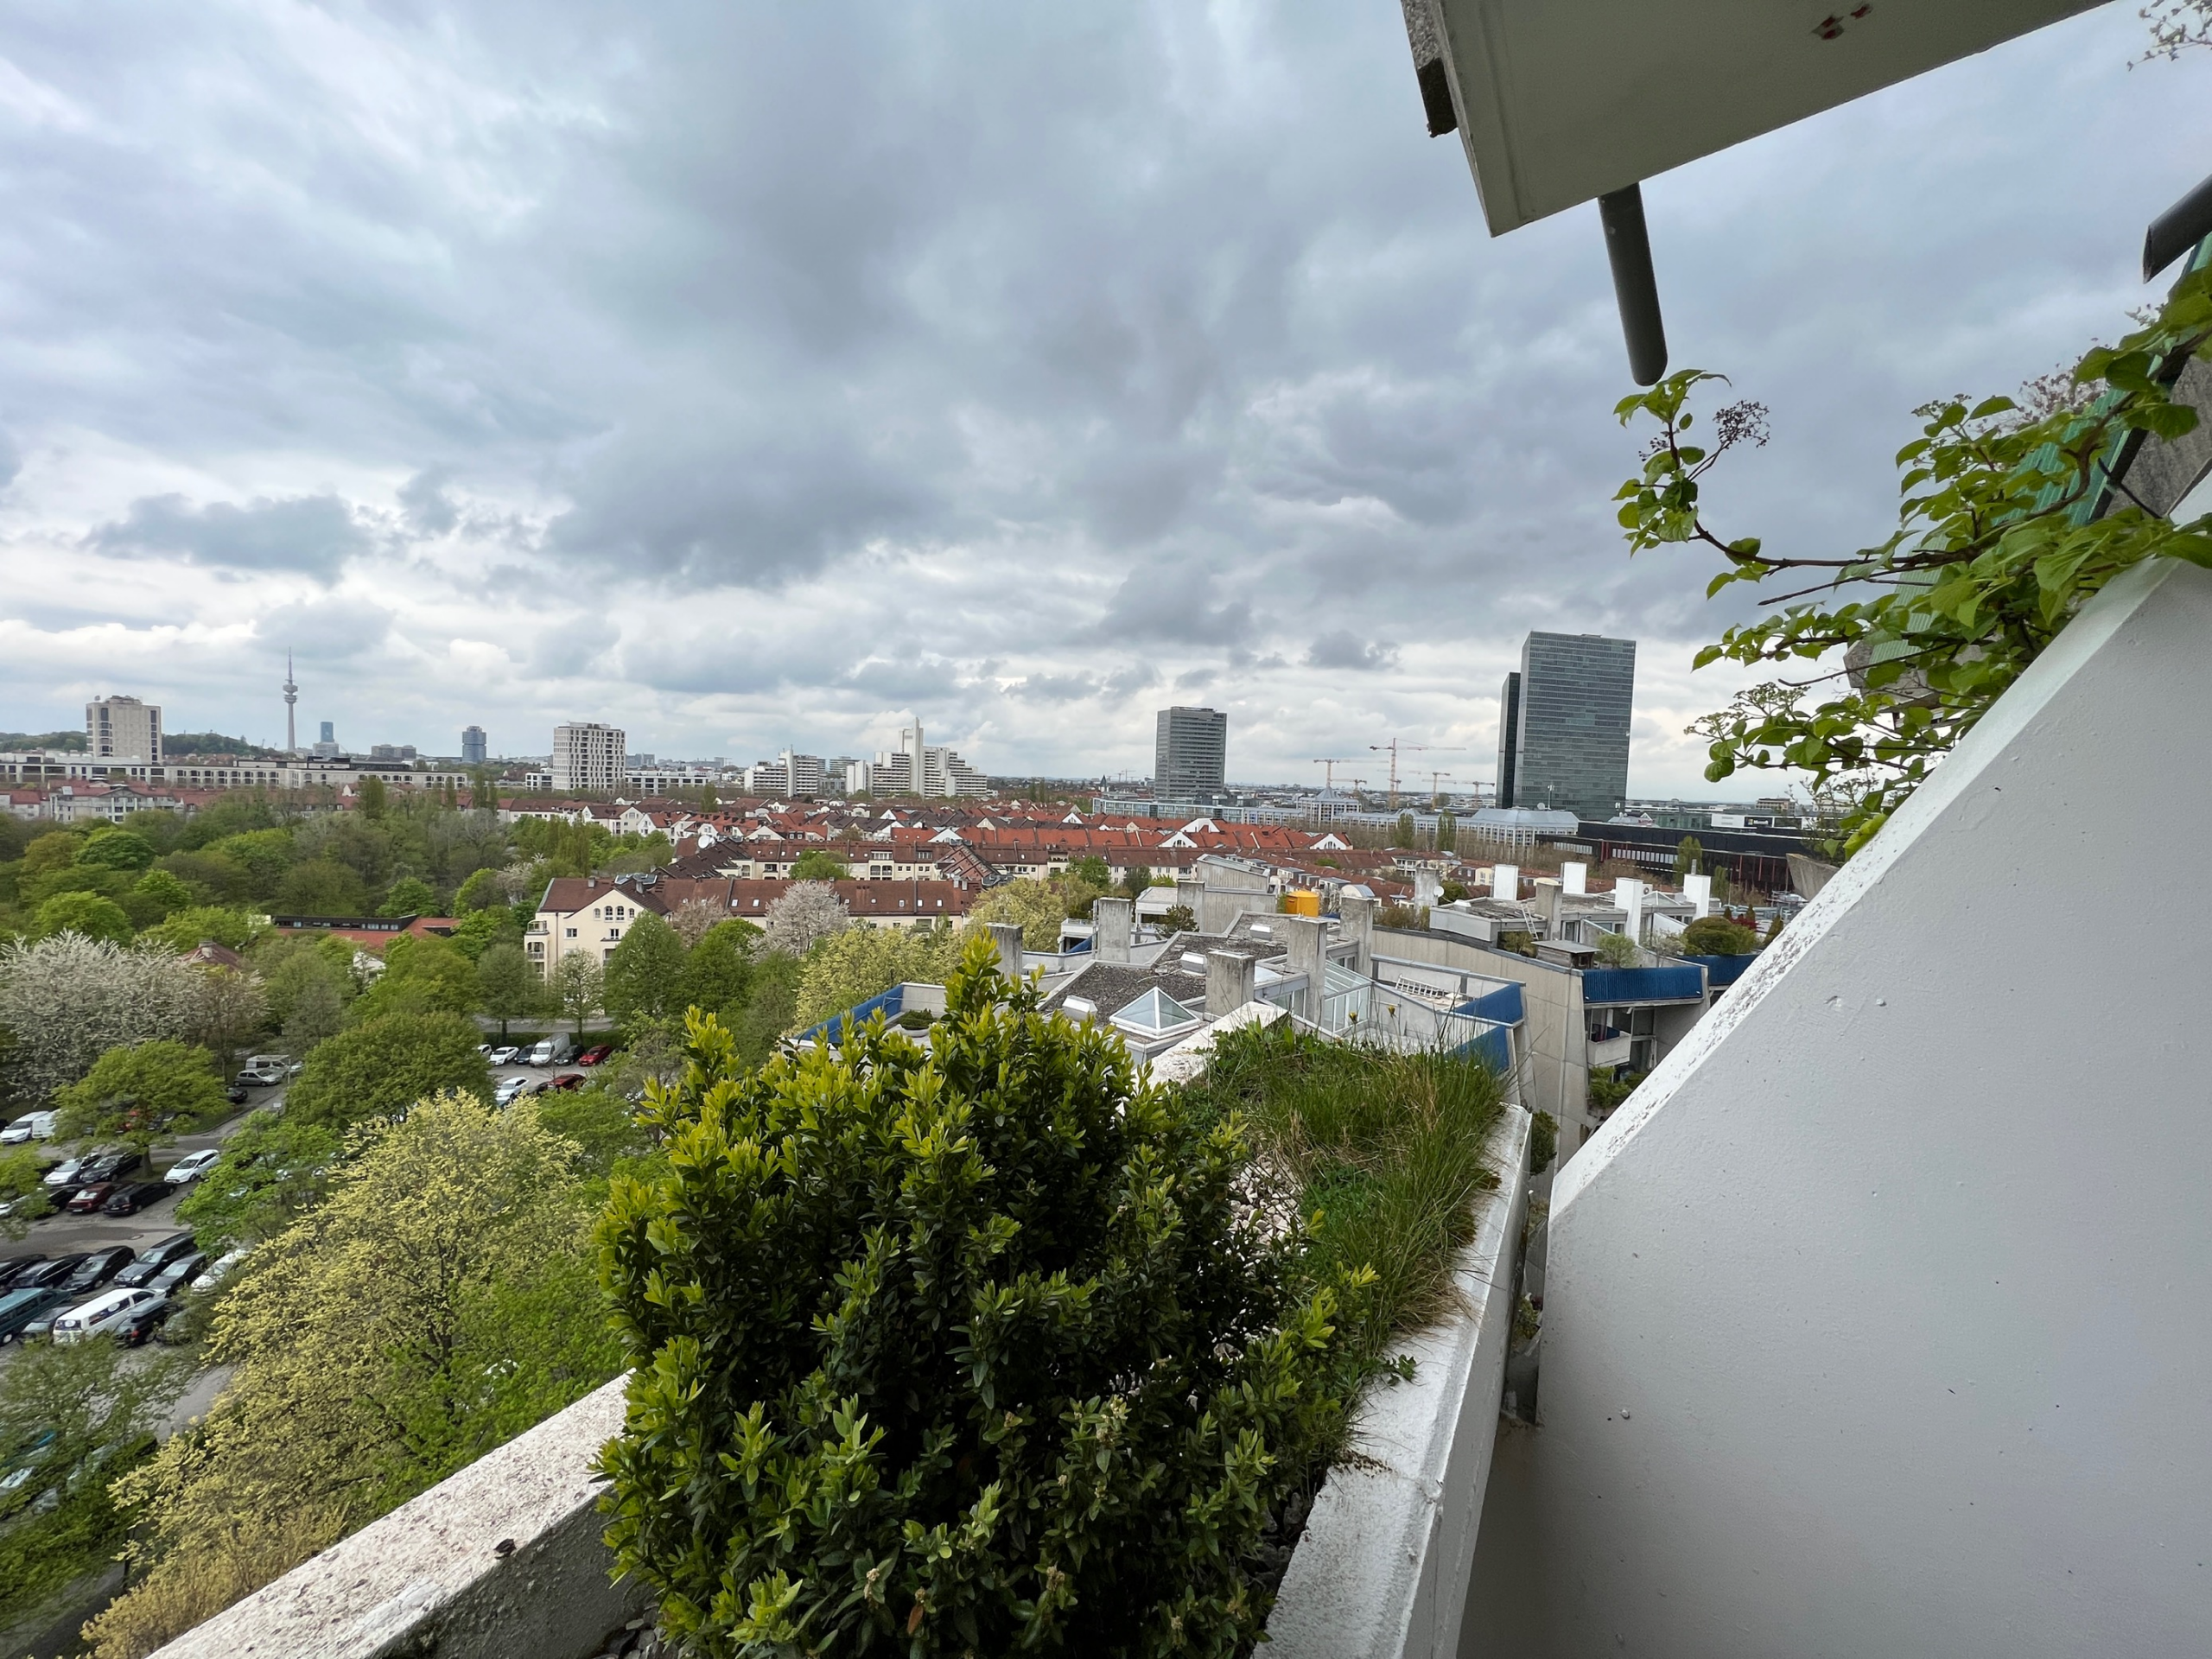 **Preisanpassung** Renoviertes Apartment in Schwabing mit perfektem Blick über München, 80805 München, Apartment